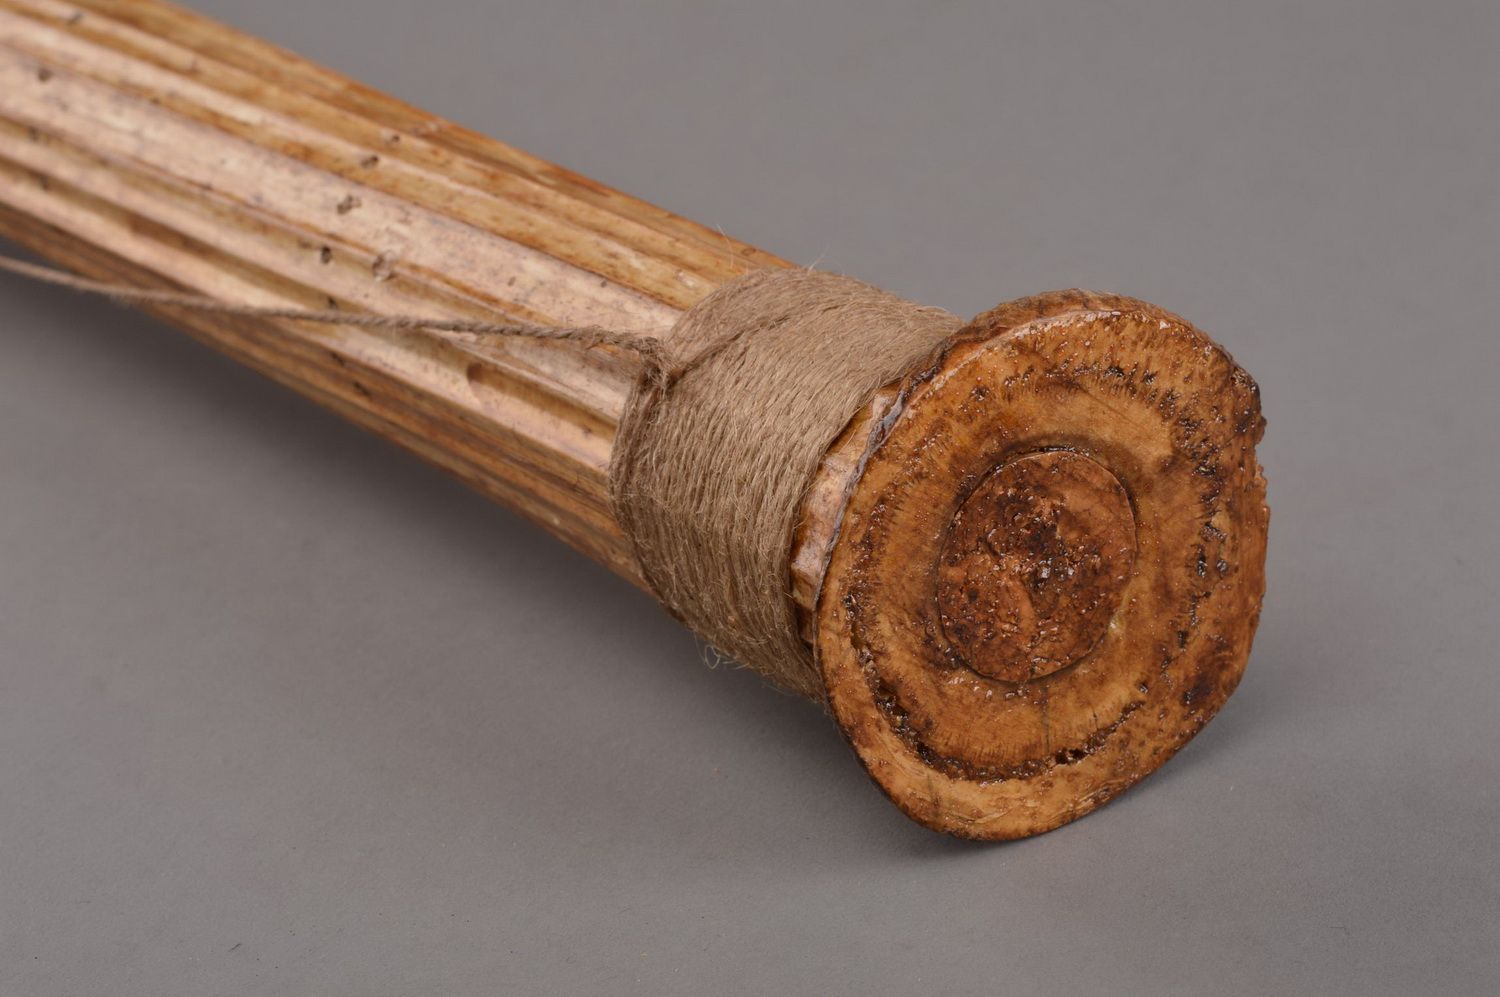 Handmade rainstick folk musical instruments souvenir gift for musician photo 4